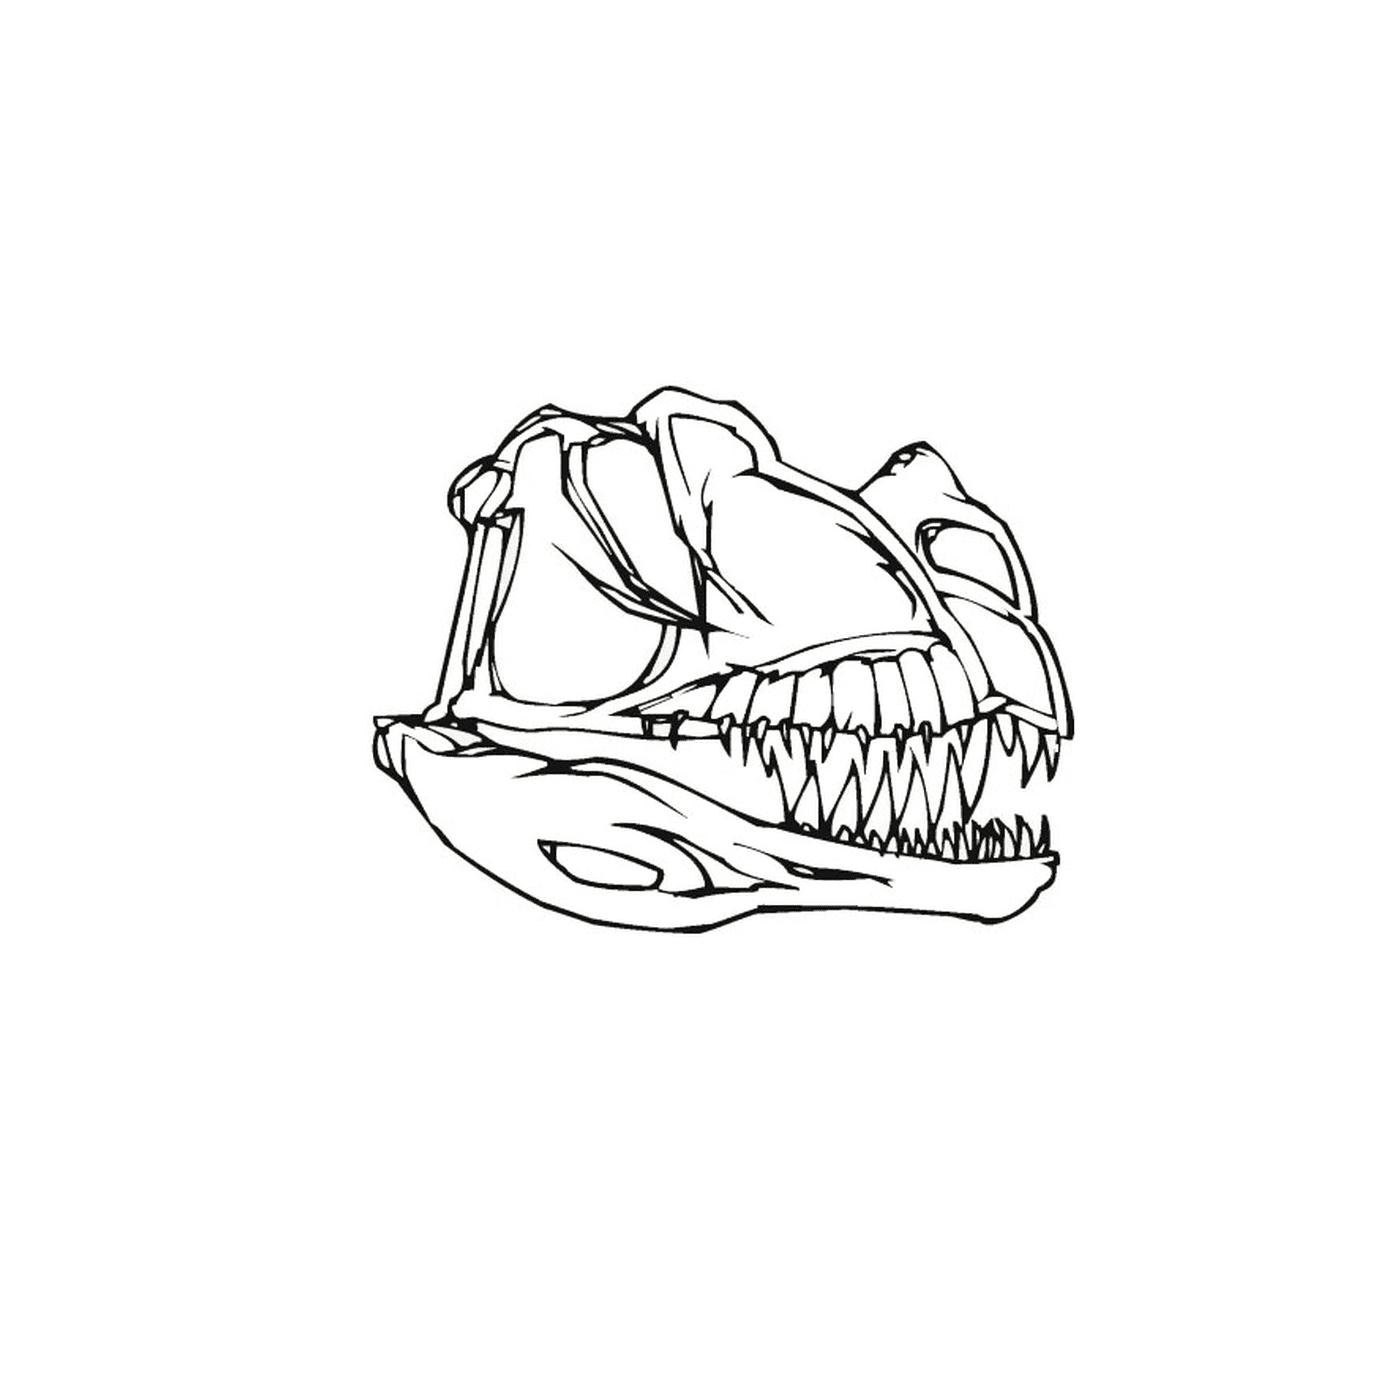  Il cranio di un dinosauro con i denti 